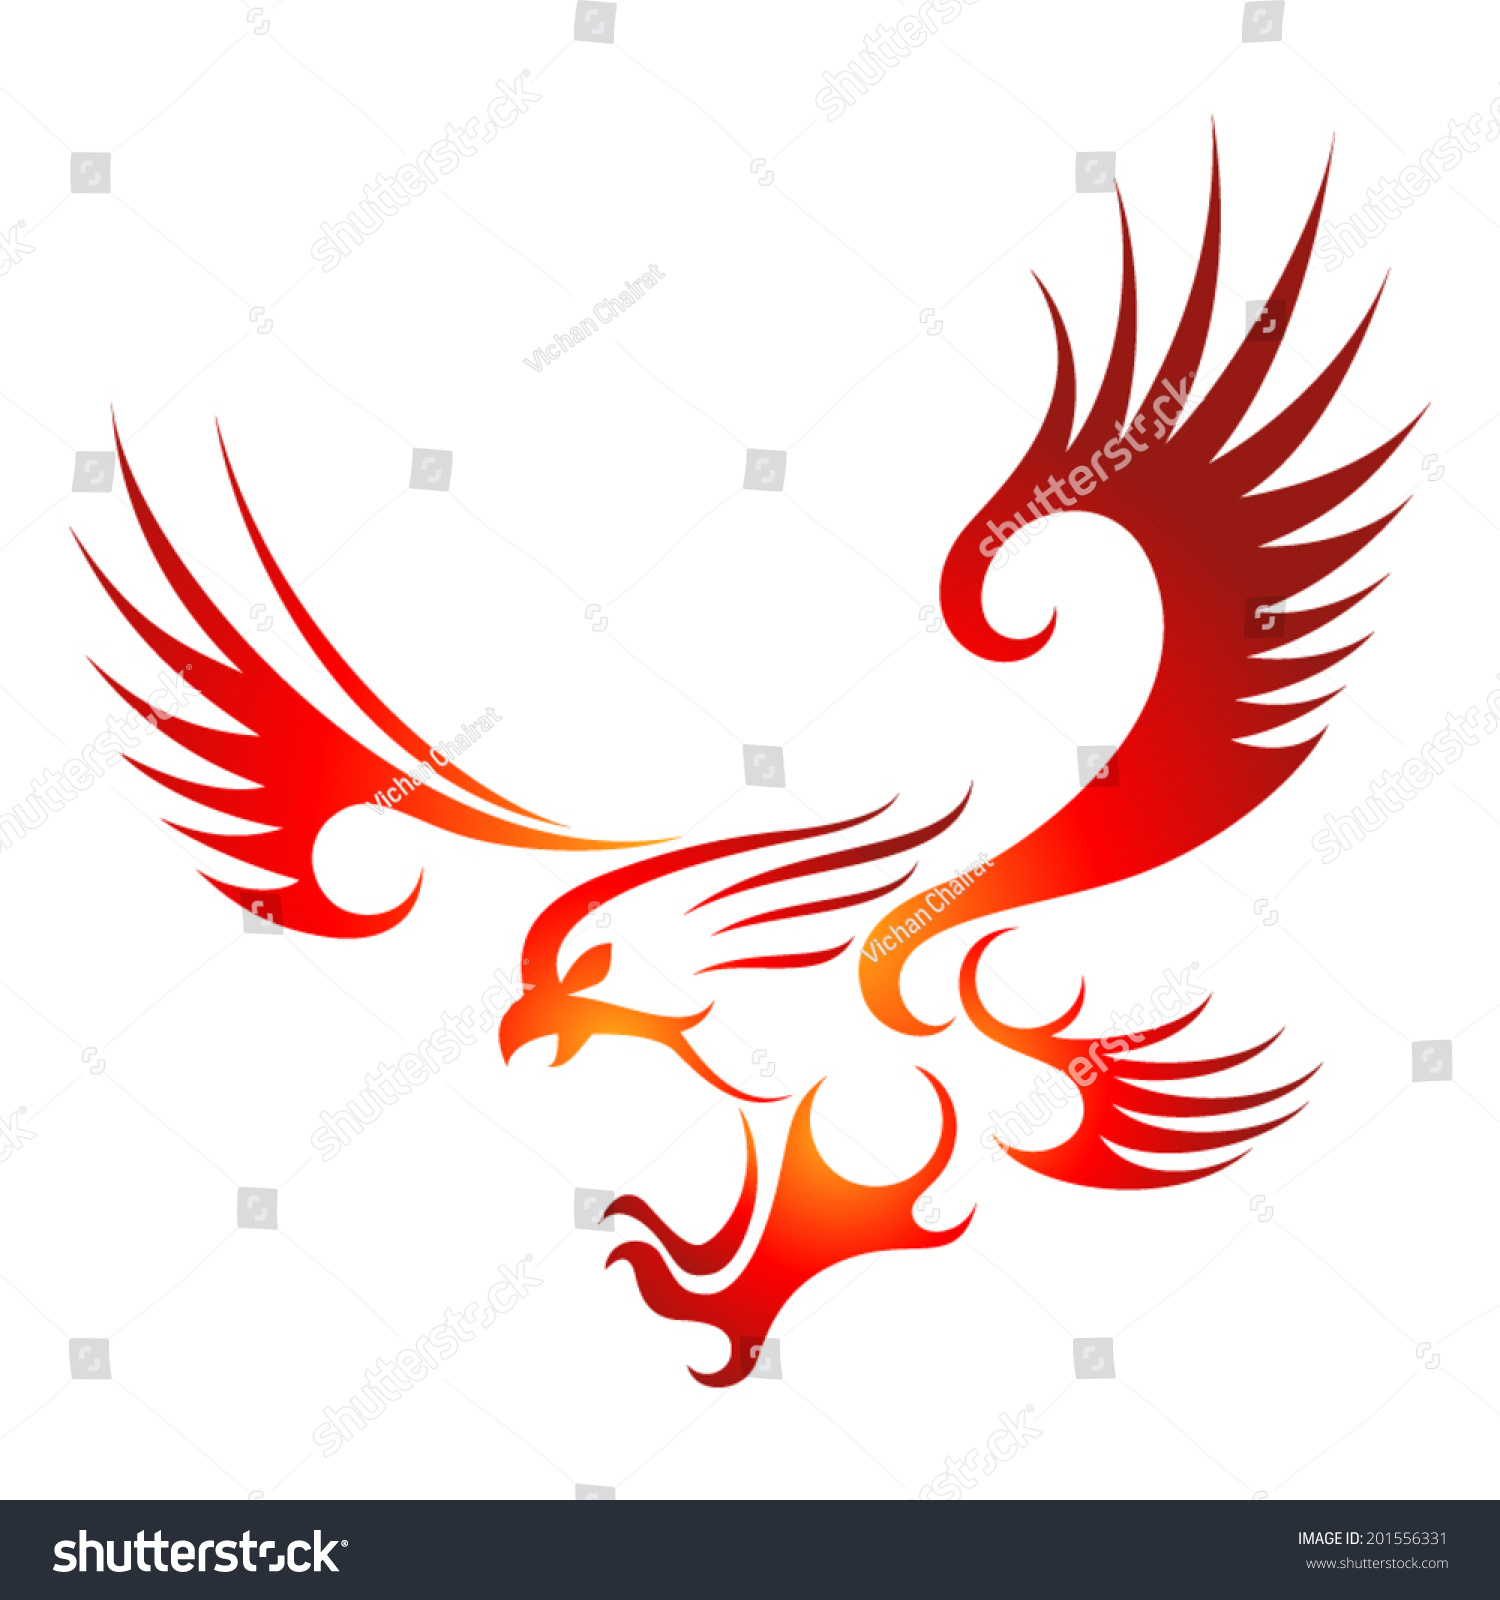 Flying Fire Eagle. Stock Vector Illustration 201556331 : Shutterstock